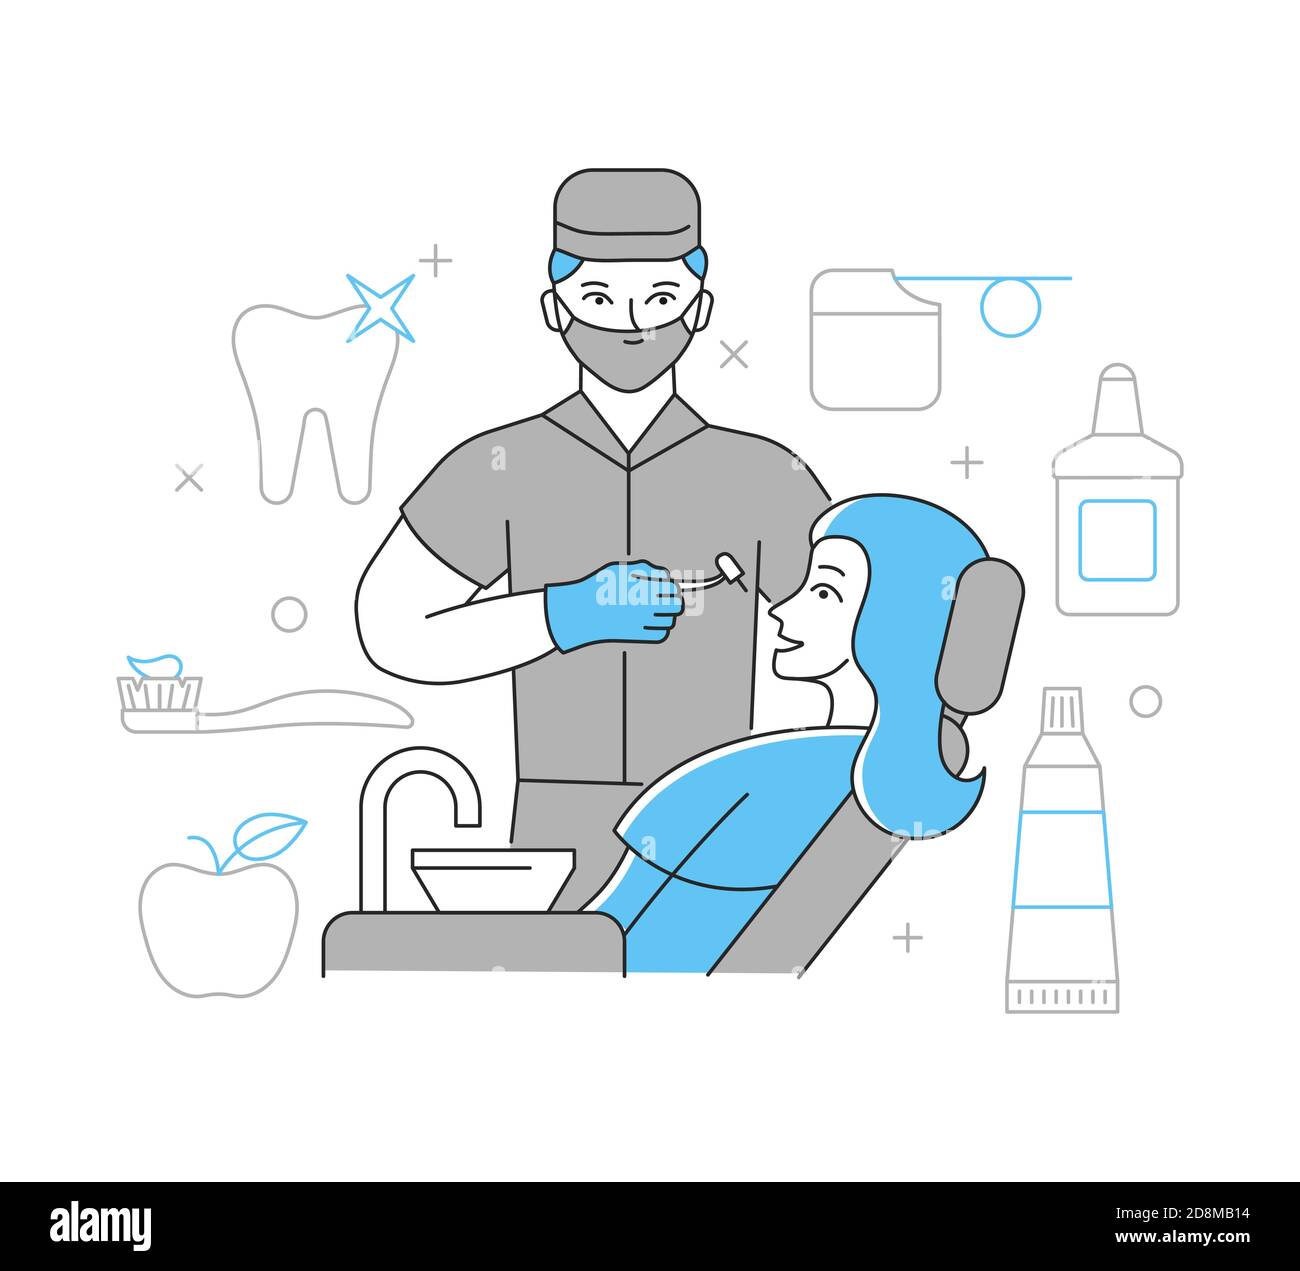 Un dentiste traite les dents d'une femme. Le concept des soins dentaires. Illustration de vecteur linéaire Illustration de Vecteur